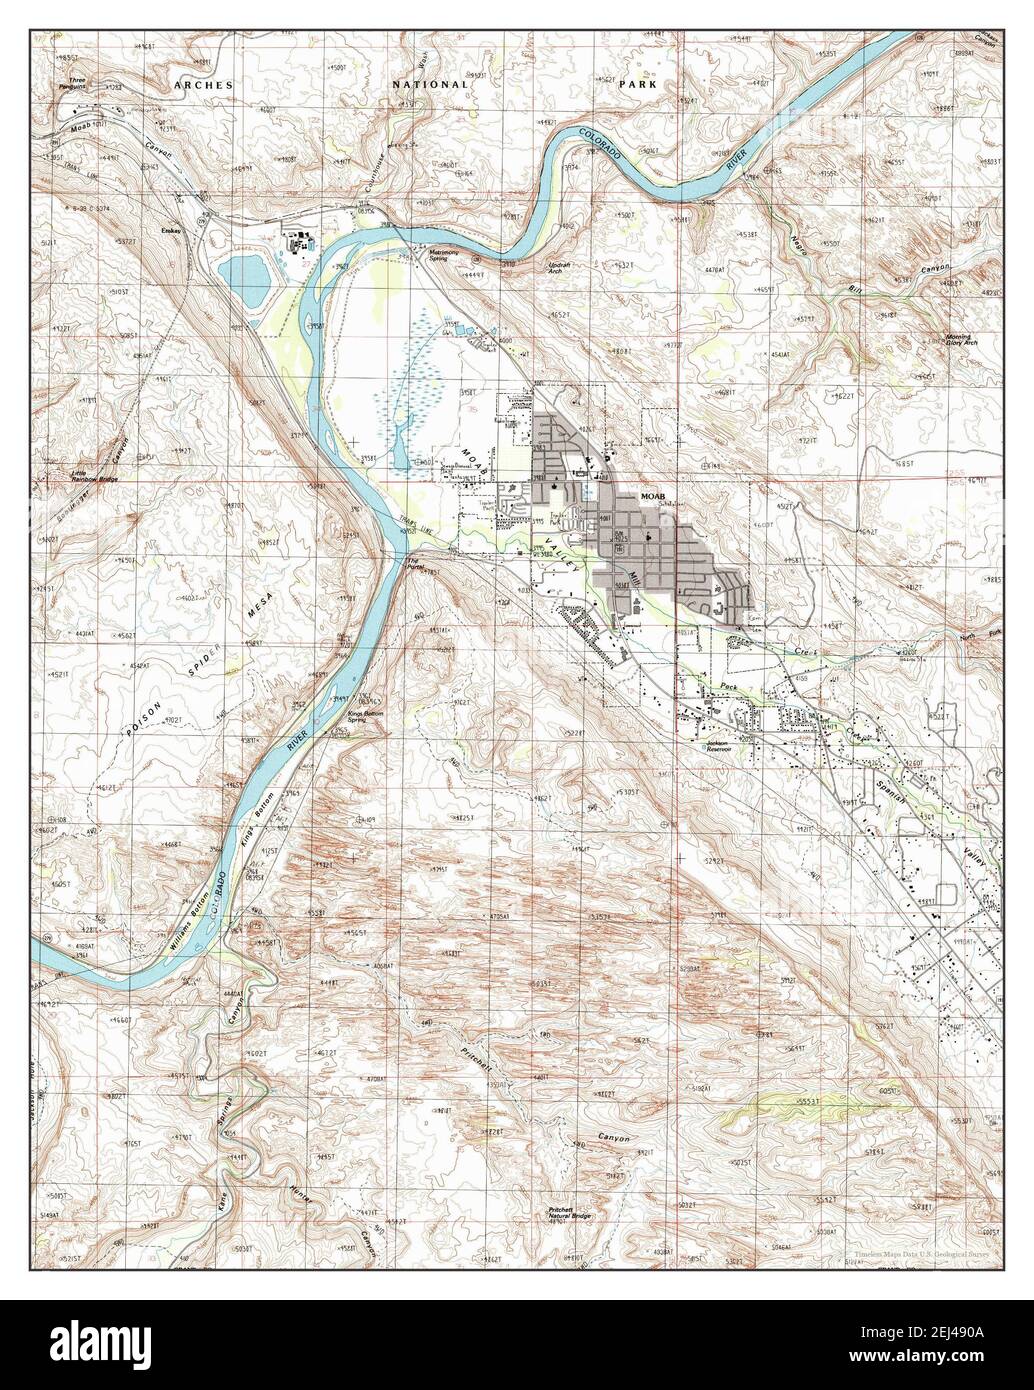 Moab, Utah, carte 1985, 1:24000, États-Unis d'Amérique par Timeless Maps, données U.S. Geological Survey Banque D'Images